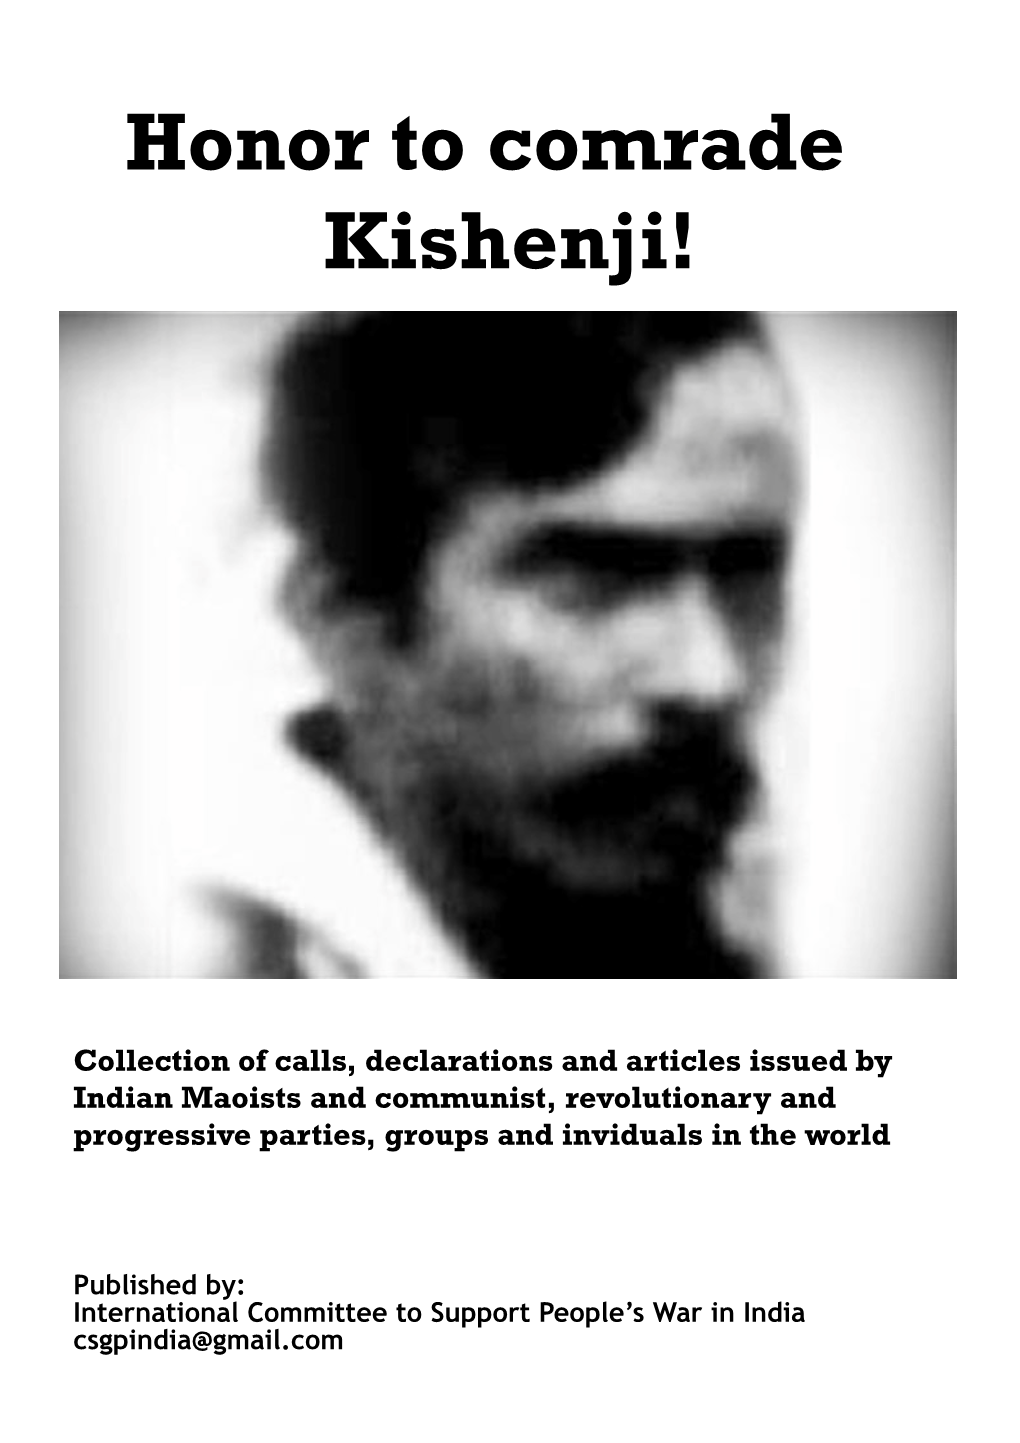 Honor to Comrade Kishenji!